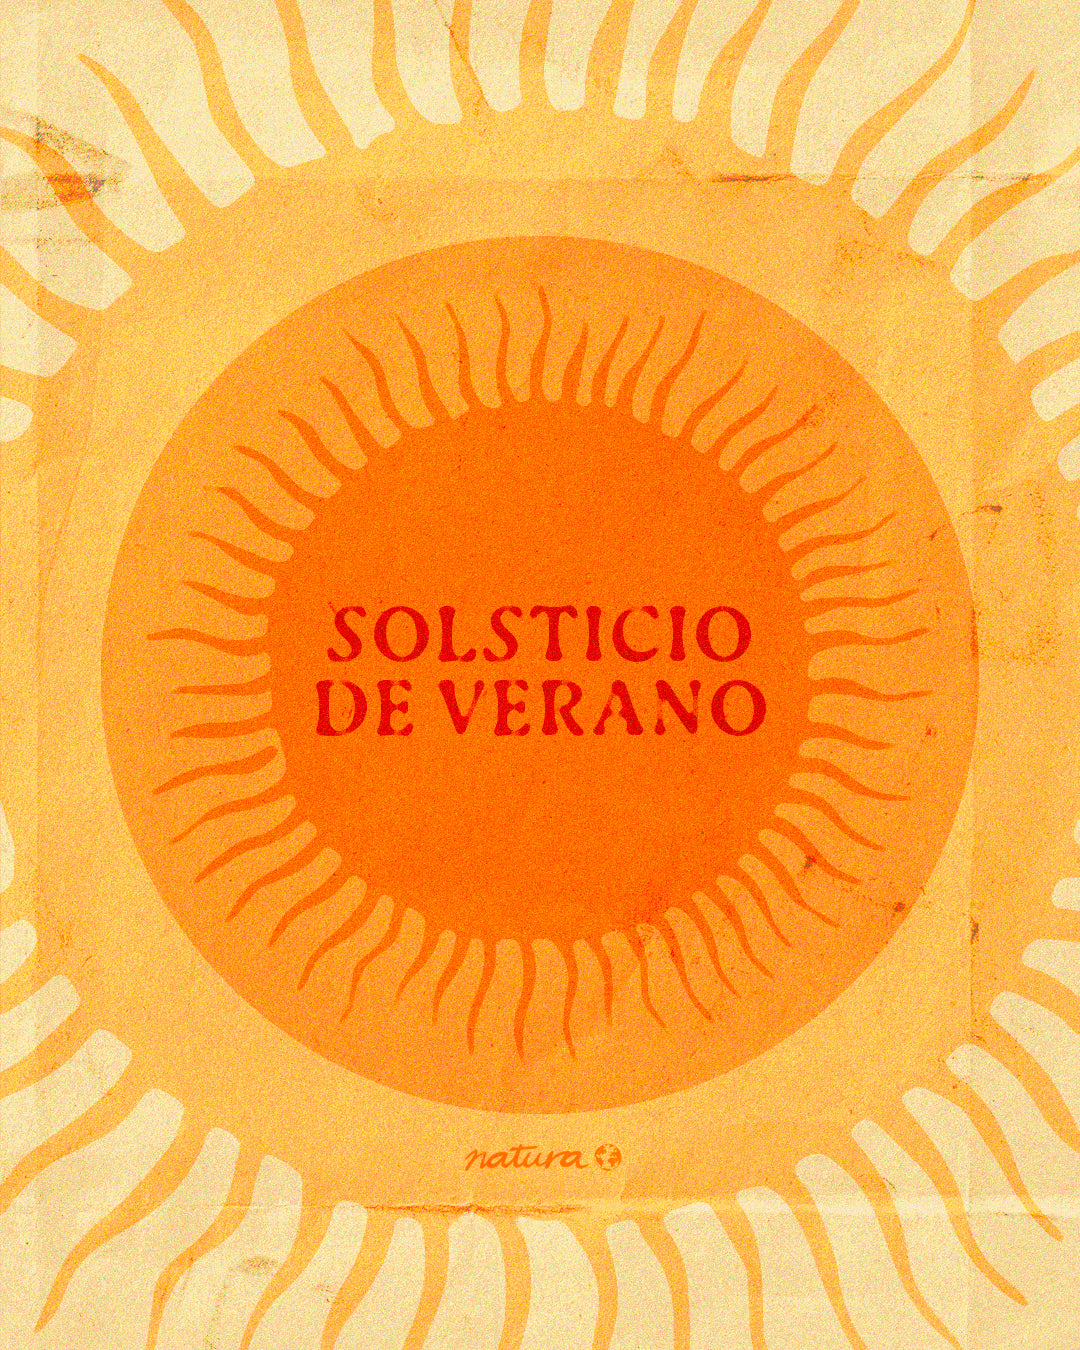 Playlist #49: Solsticio de verano